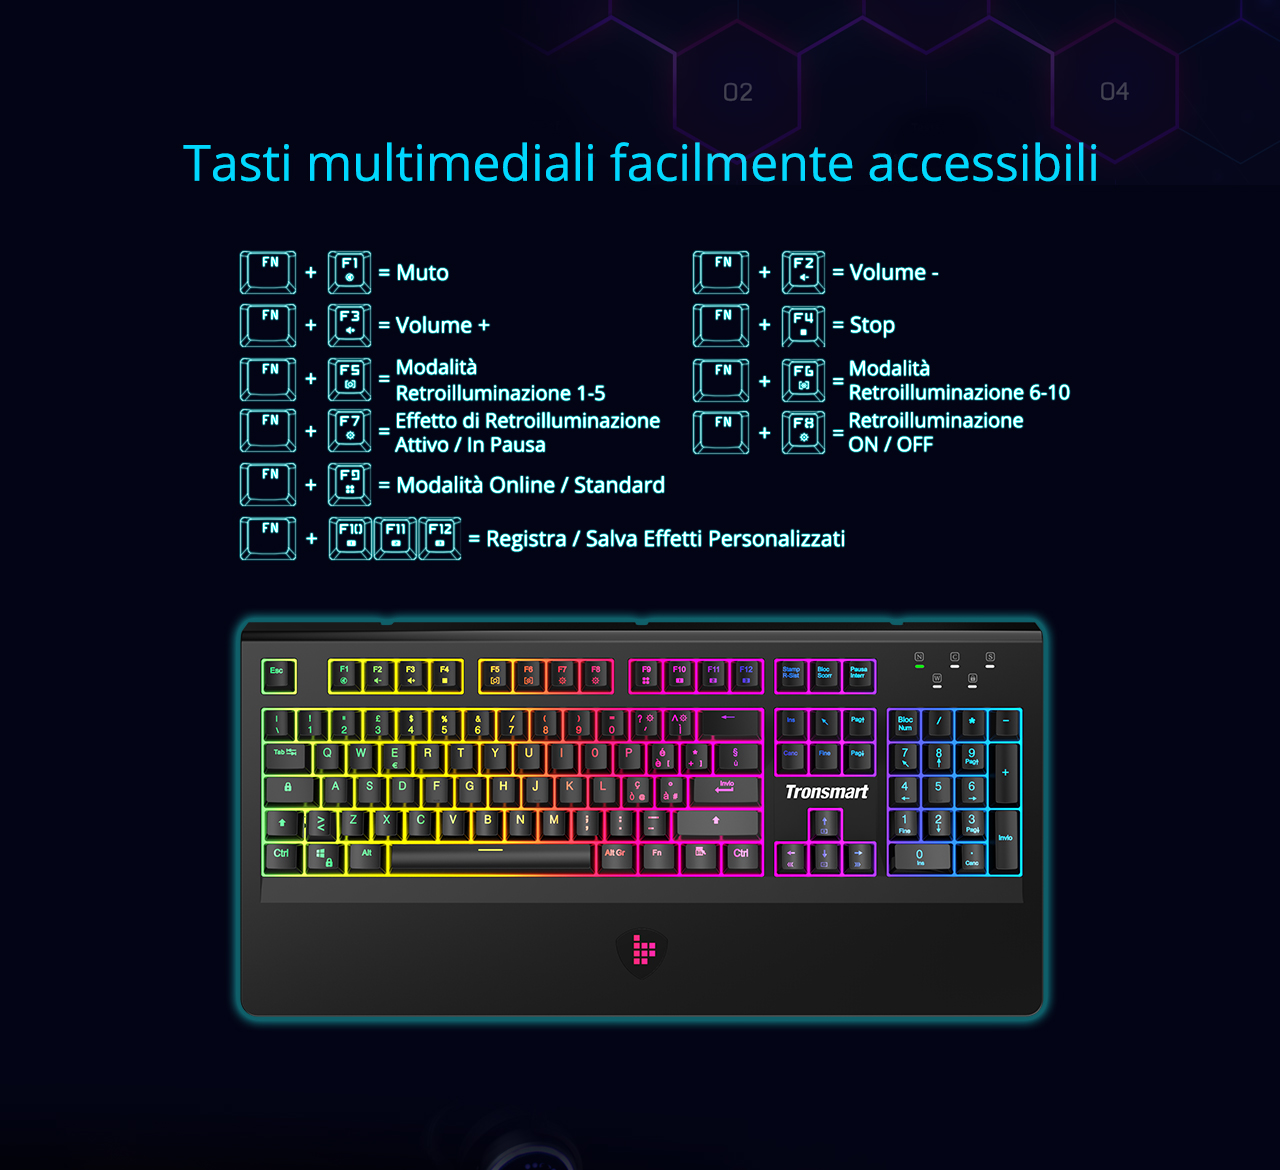 Tronsmart TK09R لوحة مفاتيح الألعاب الميكانيكية مع مفاتيح RGB Backlght الماكرو مفاتيح زرقاء للاعبين - تخطيط تكنولوجيا المعلومات